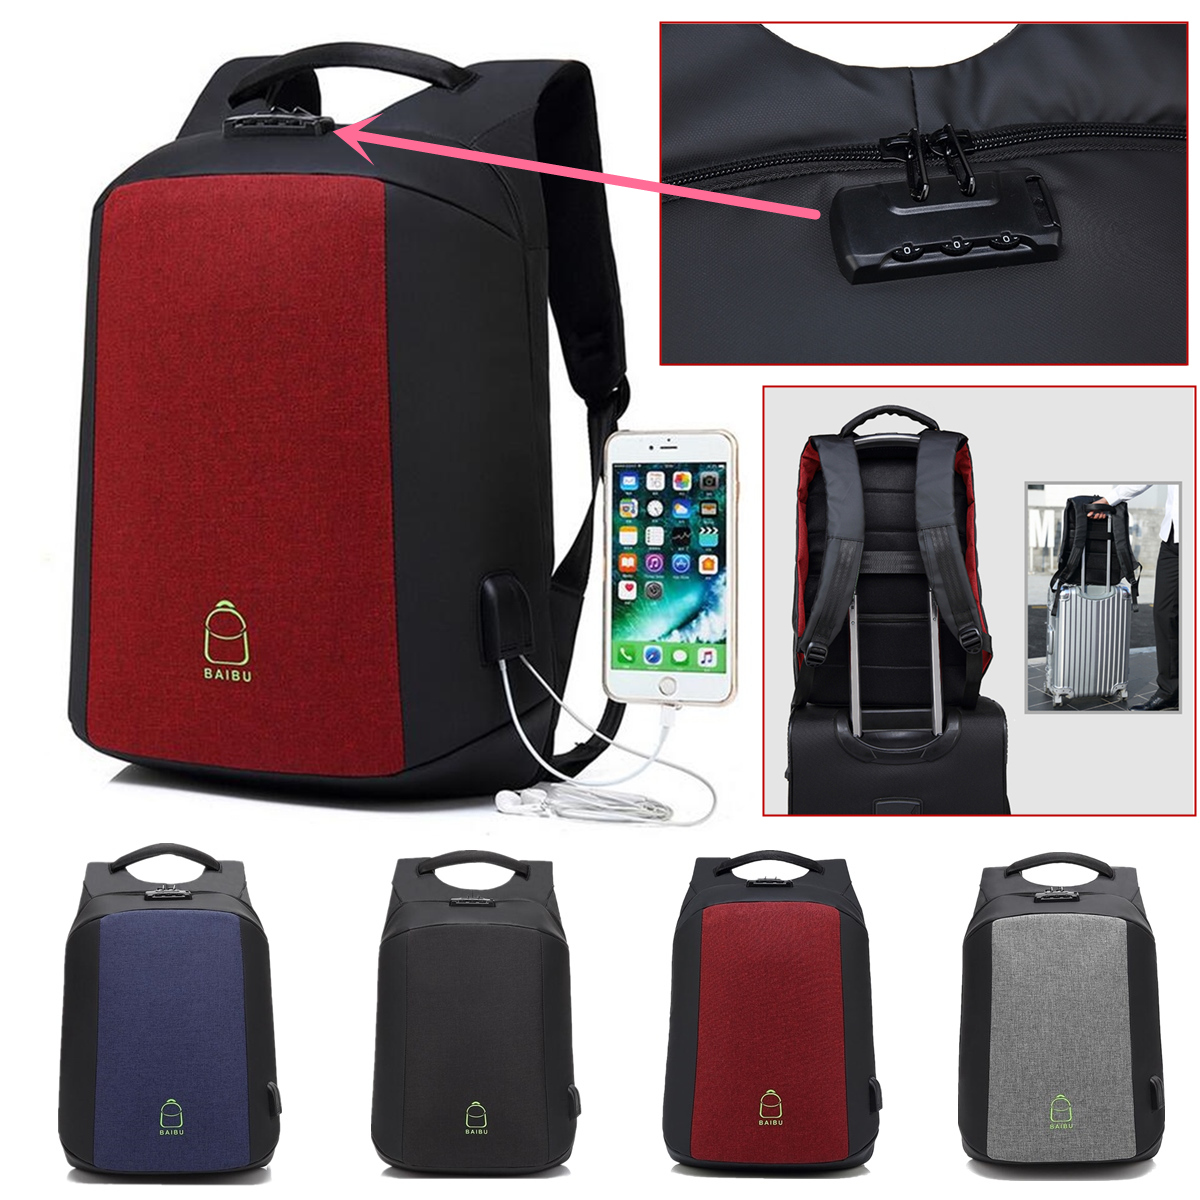 156-Inch-Laptop-Backpack-Bag-Travel-Bag-Student-Bag-With-External-USB-Charging-Port-1288885-1